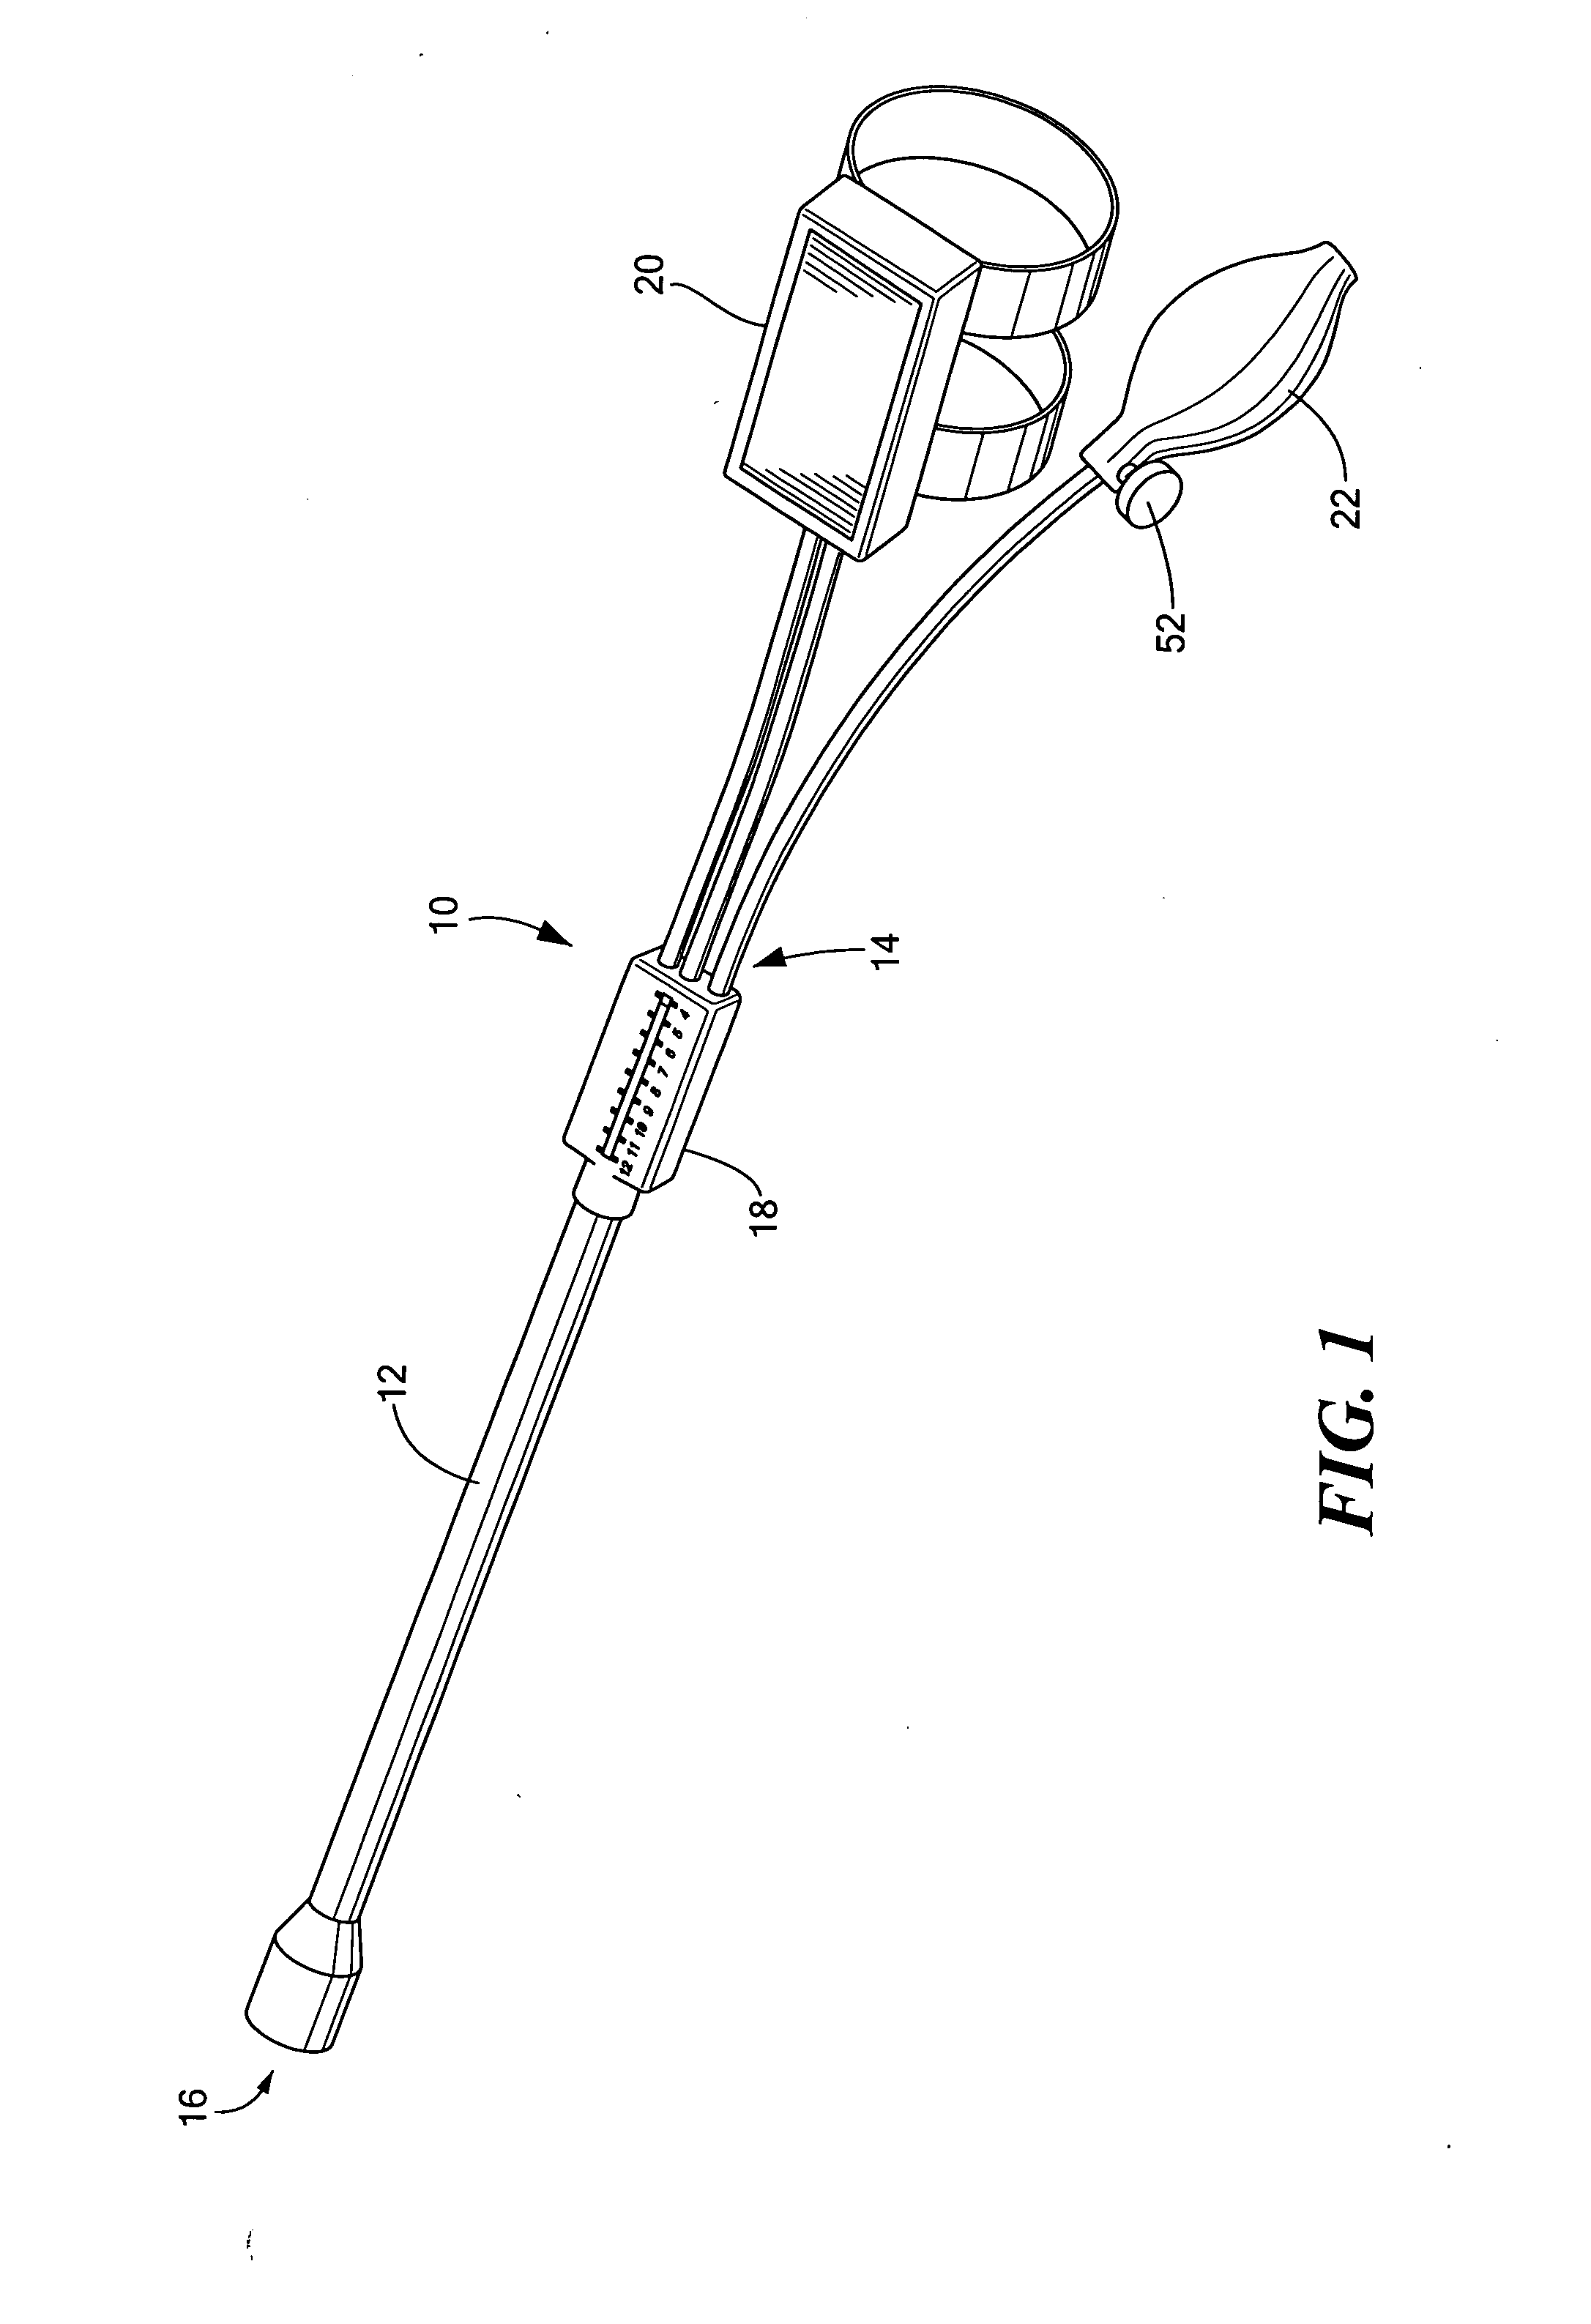 Cervical dilation measurement apparatus